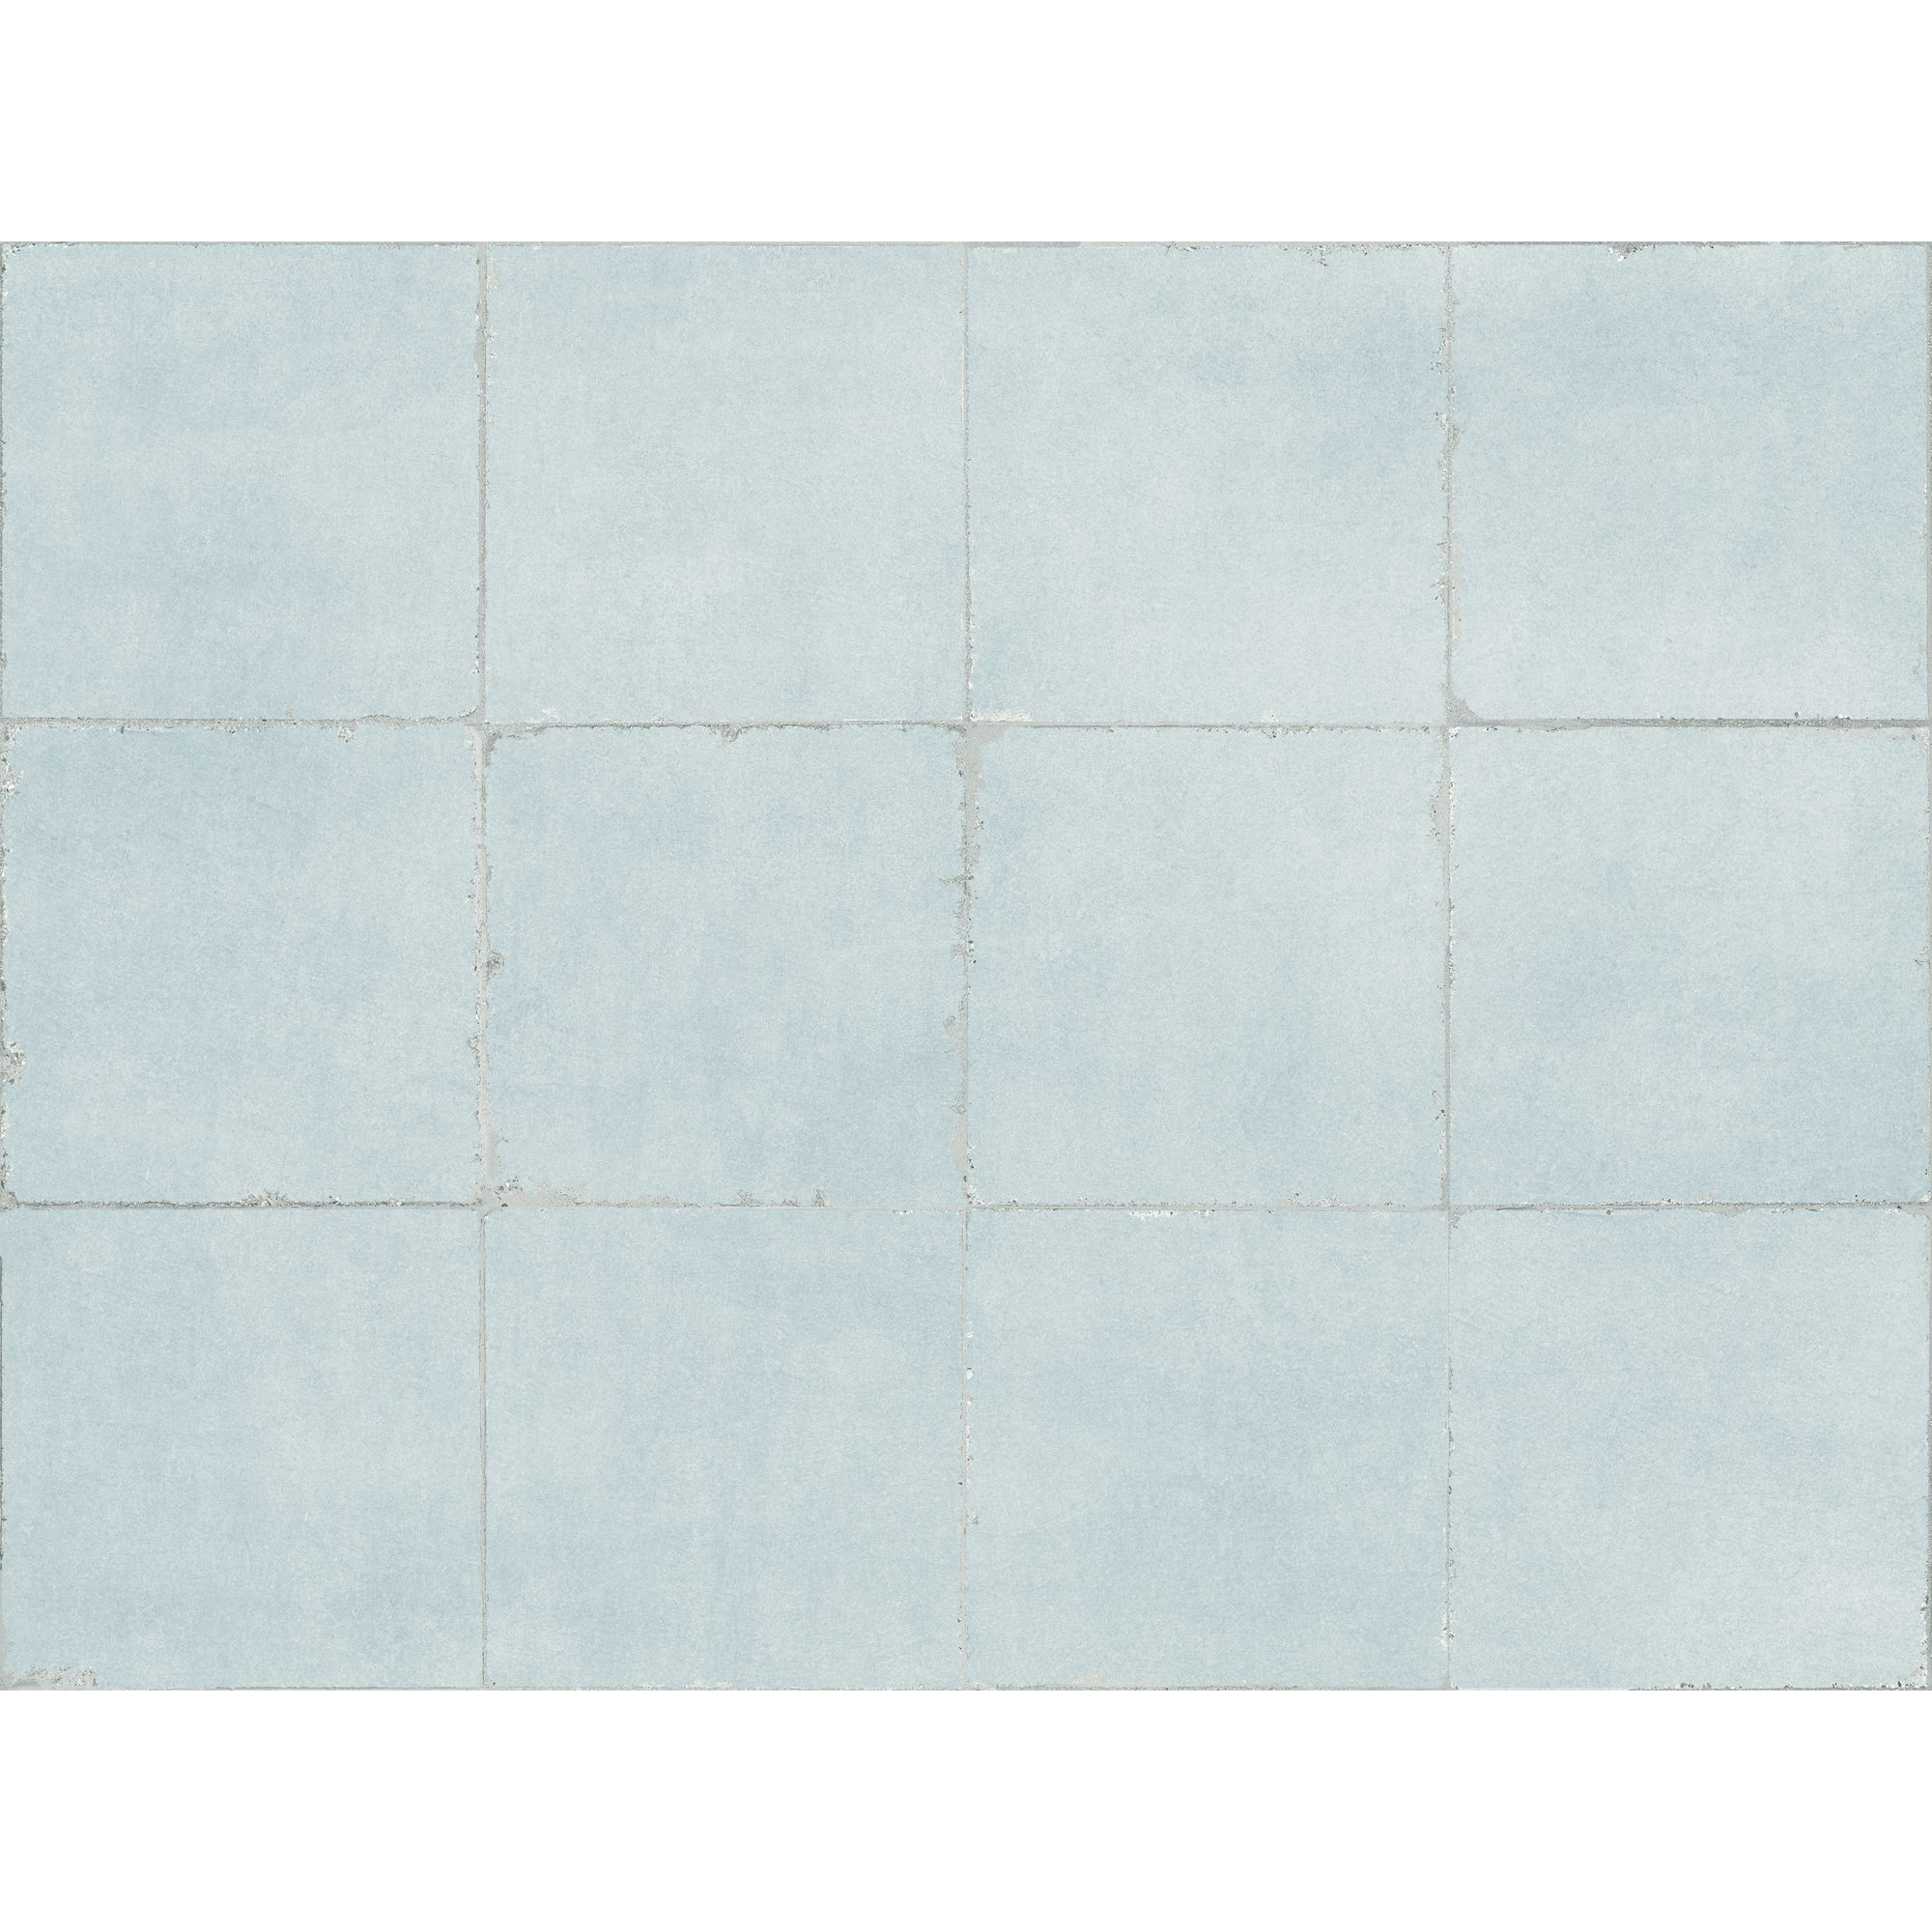 Bodenfliese 'Valencia' Feinsteinzeug hellblau matt 20 x 20 cm + product picture